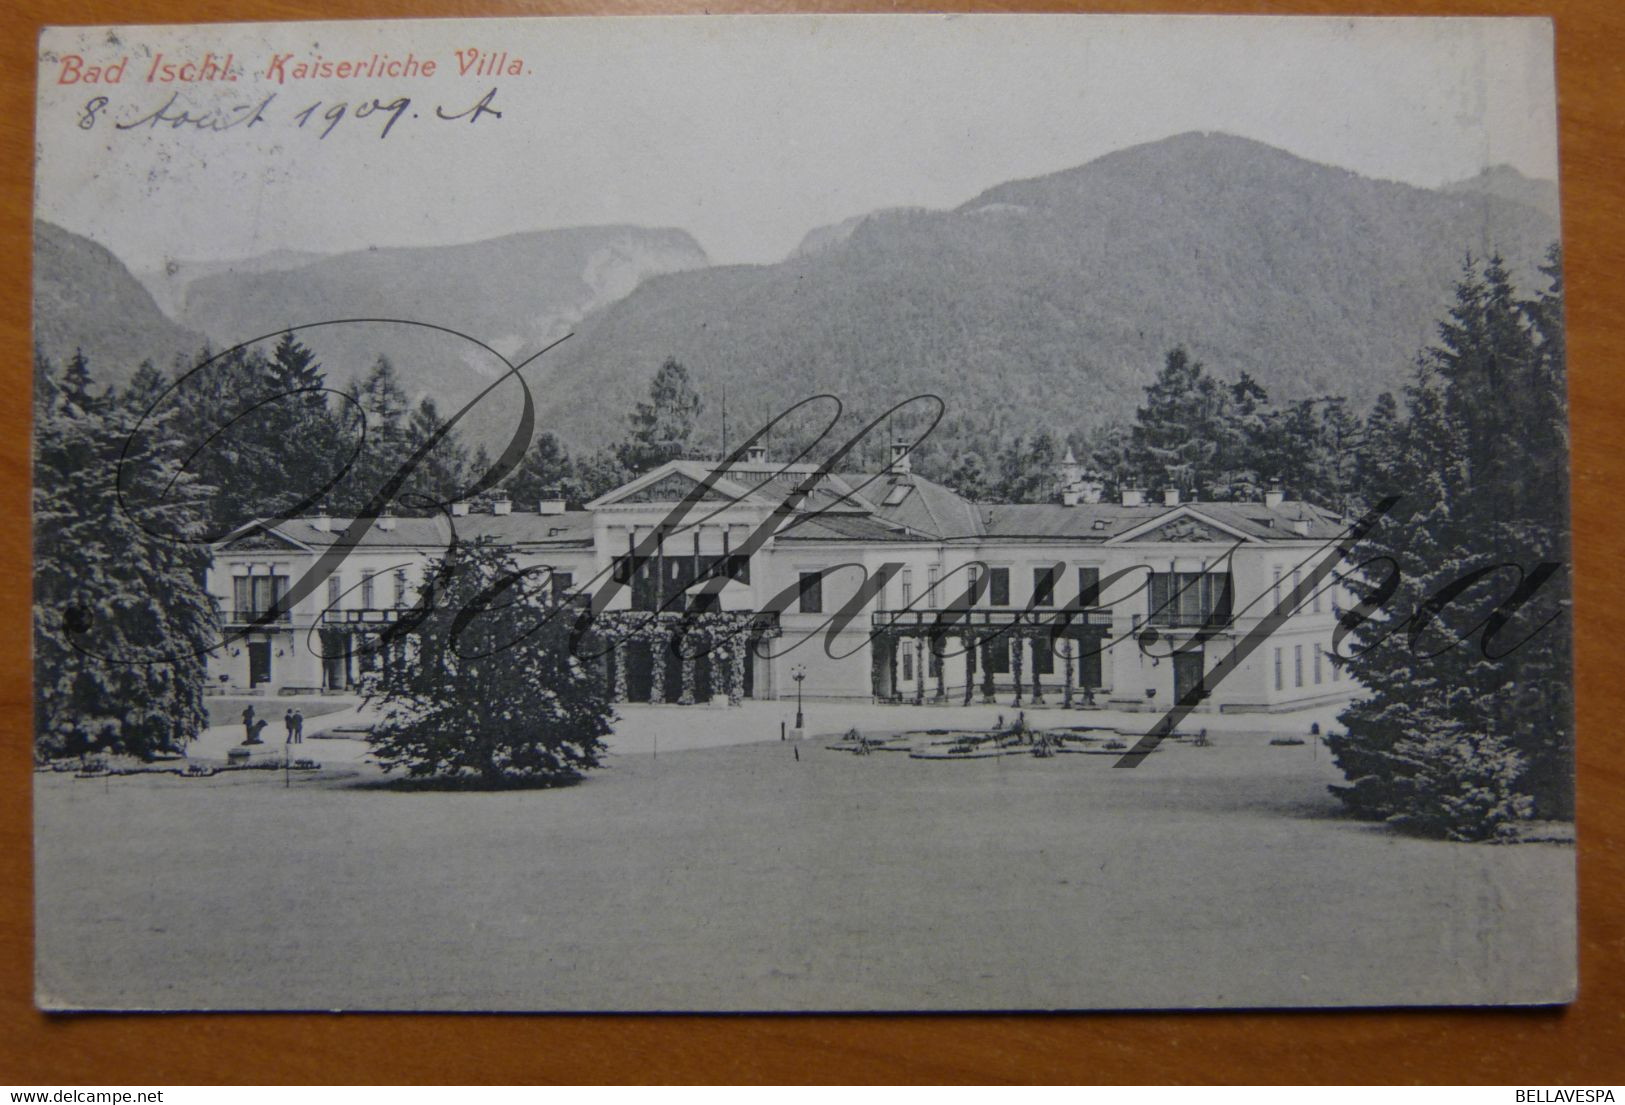 Bad Ischl Kaiserliche Villa. -1909-N°1568 - Bad Ischl